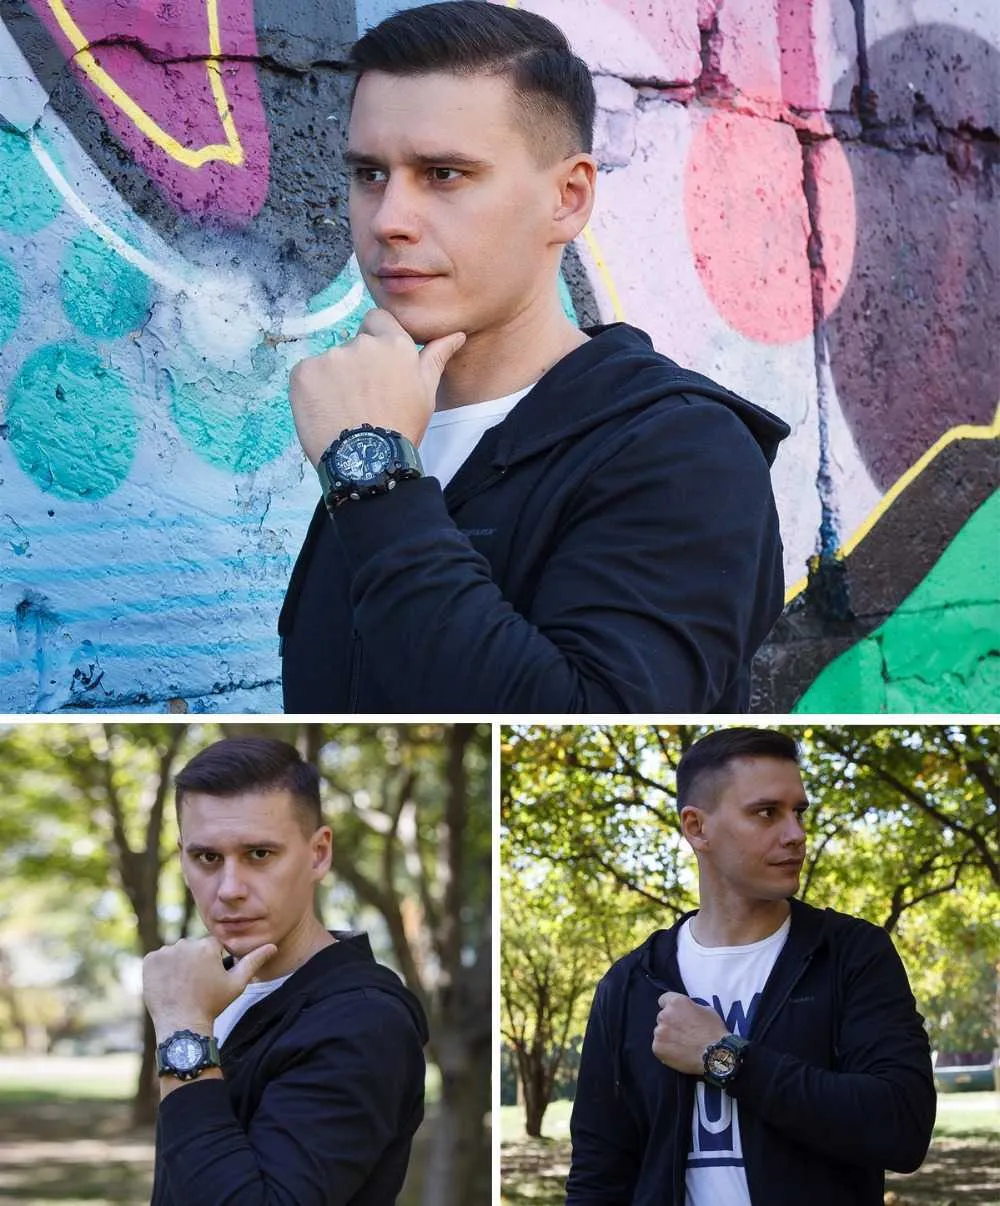 Smael Men zegarek wojskowy 50m Wodoodporny zegarek na rękę Kwarcowy Zegar Mężczyzna Relogios Masculino 1617 Digital Sports Watches Men's3216